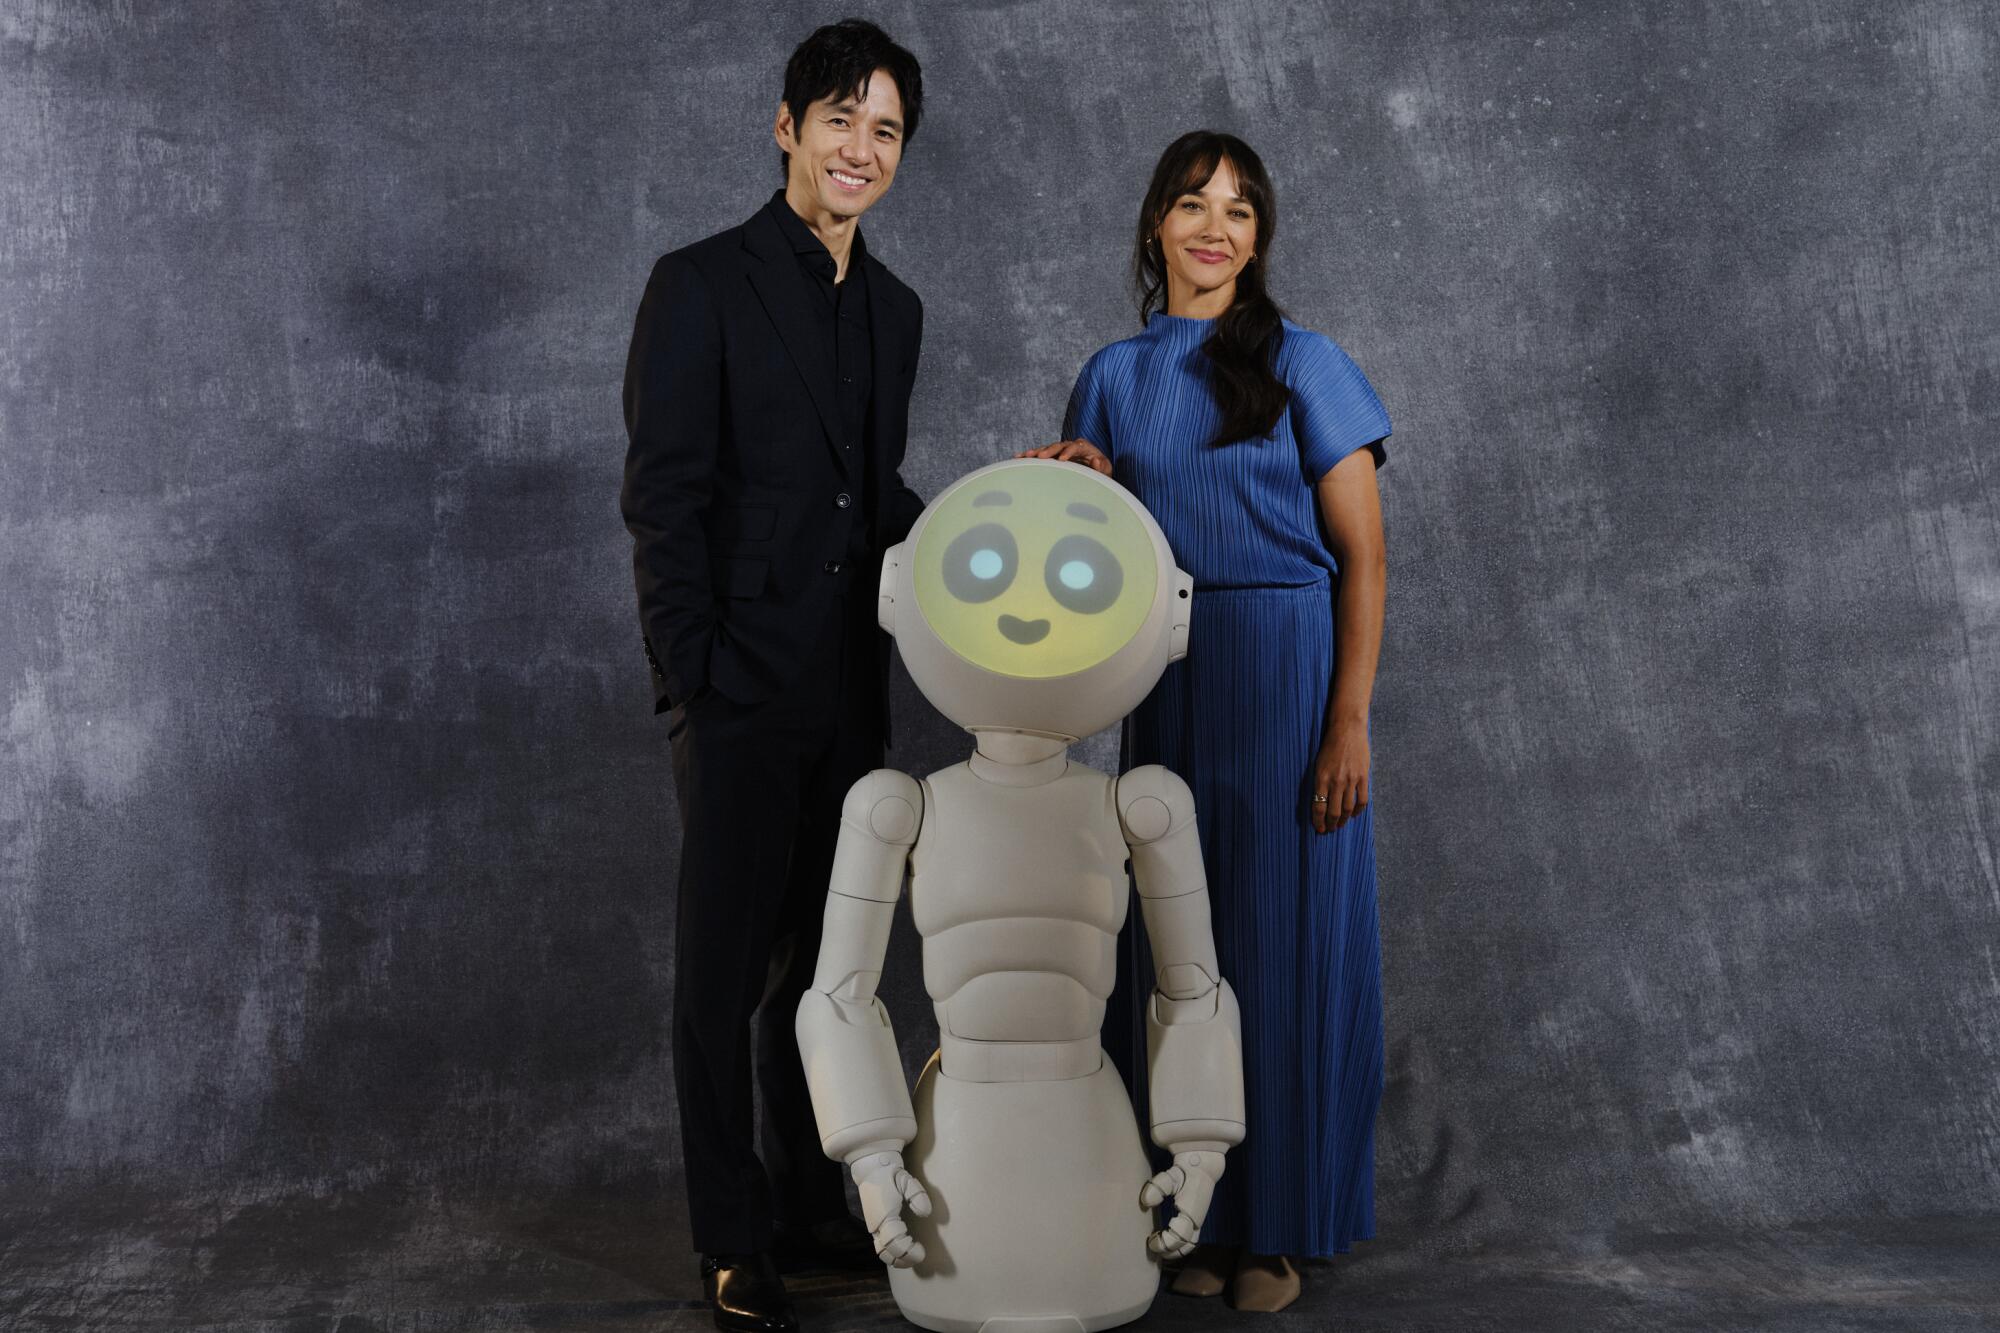 Hidetoshi Nishijima and Rashida Jones posing with a humanoid robot.